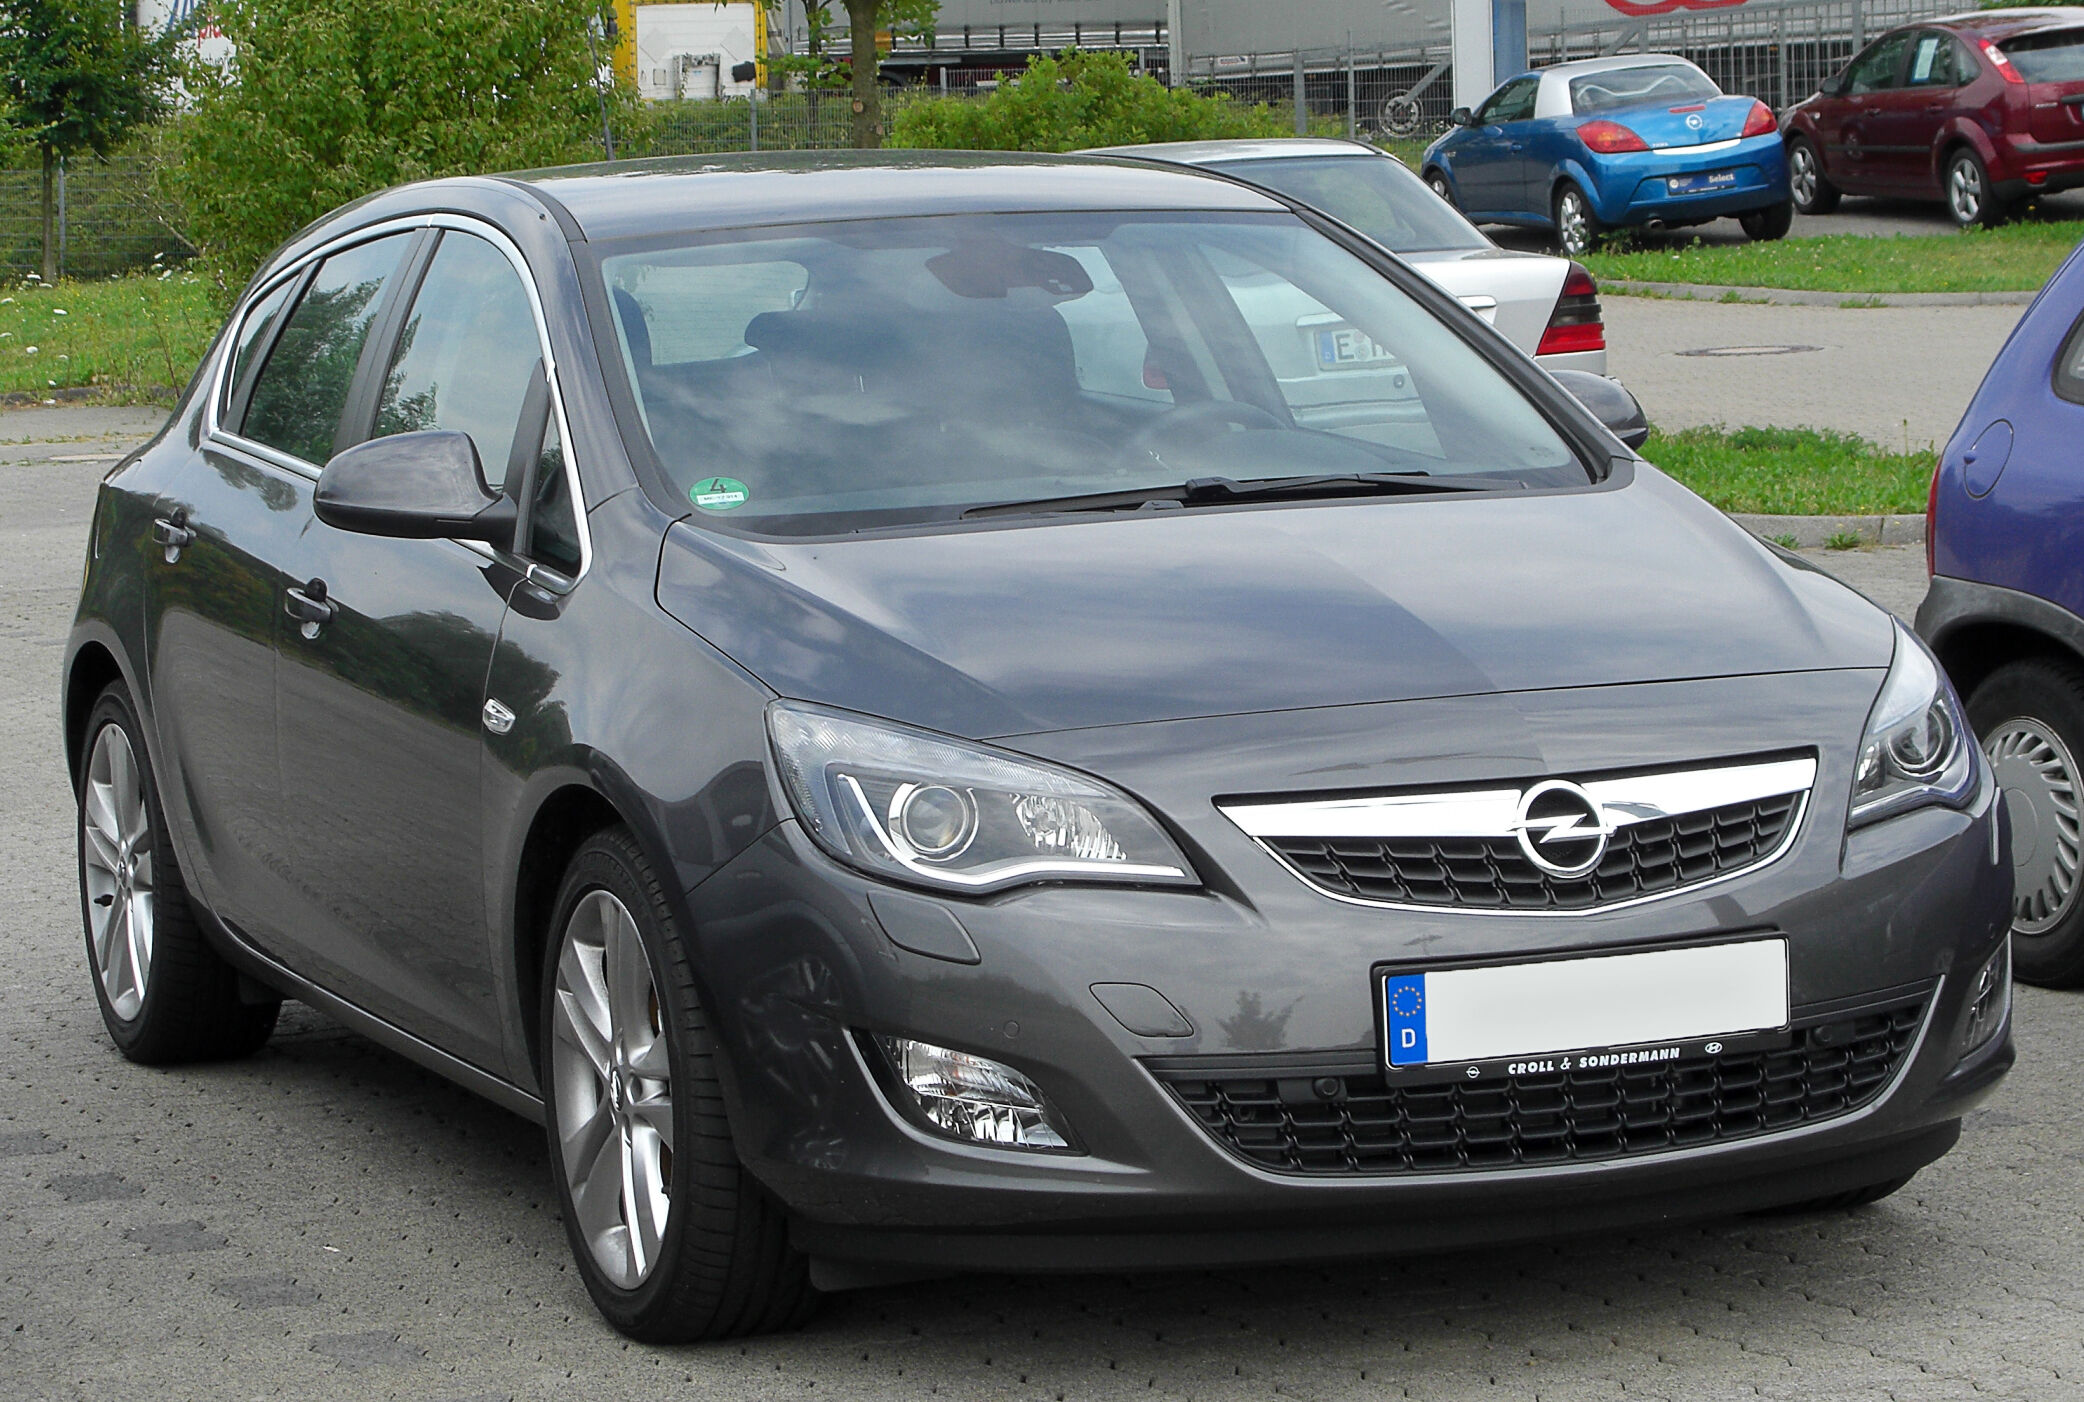 File:Opel Agila B front-1.jpg - Wikimedia Commons